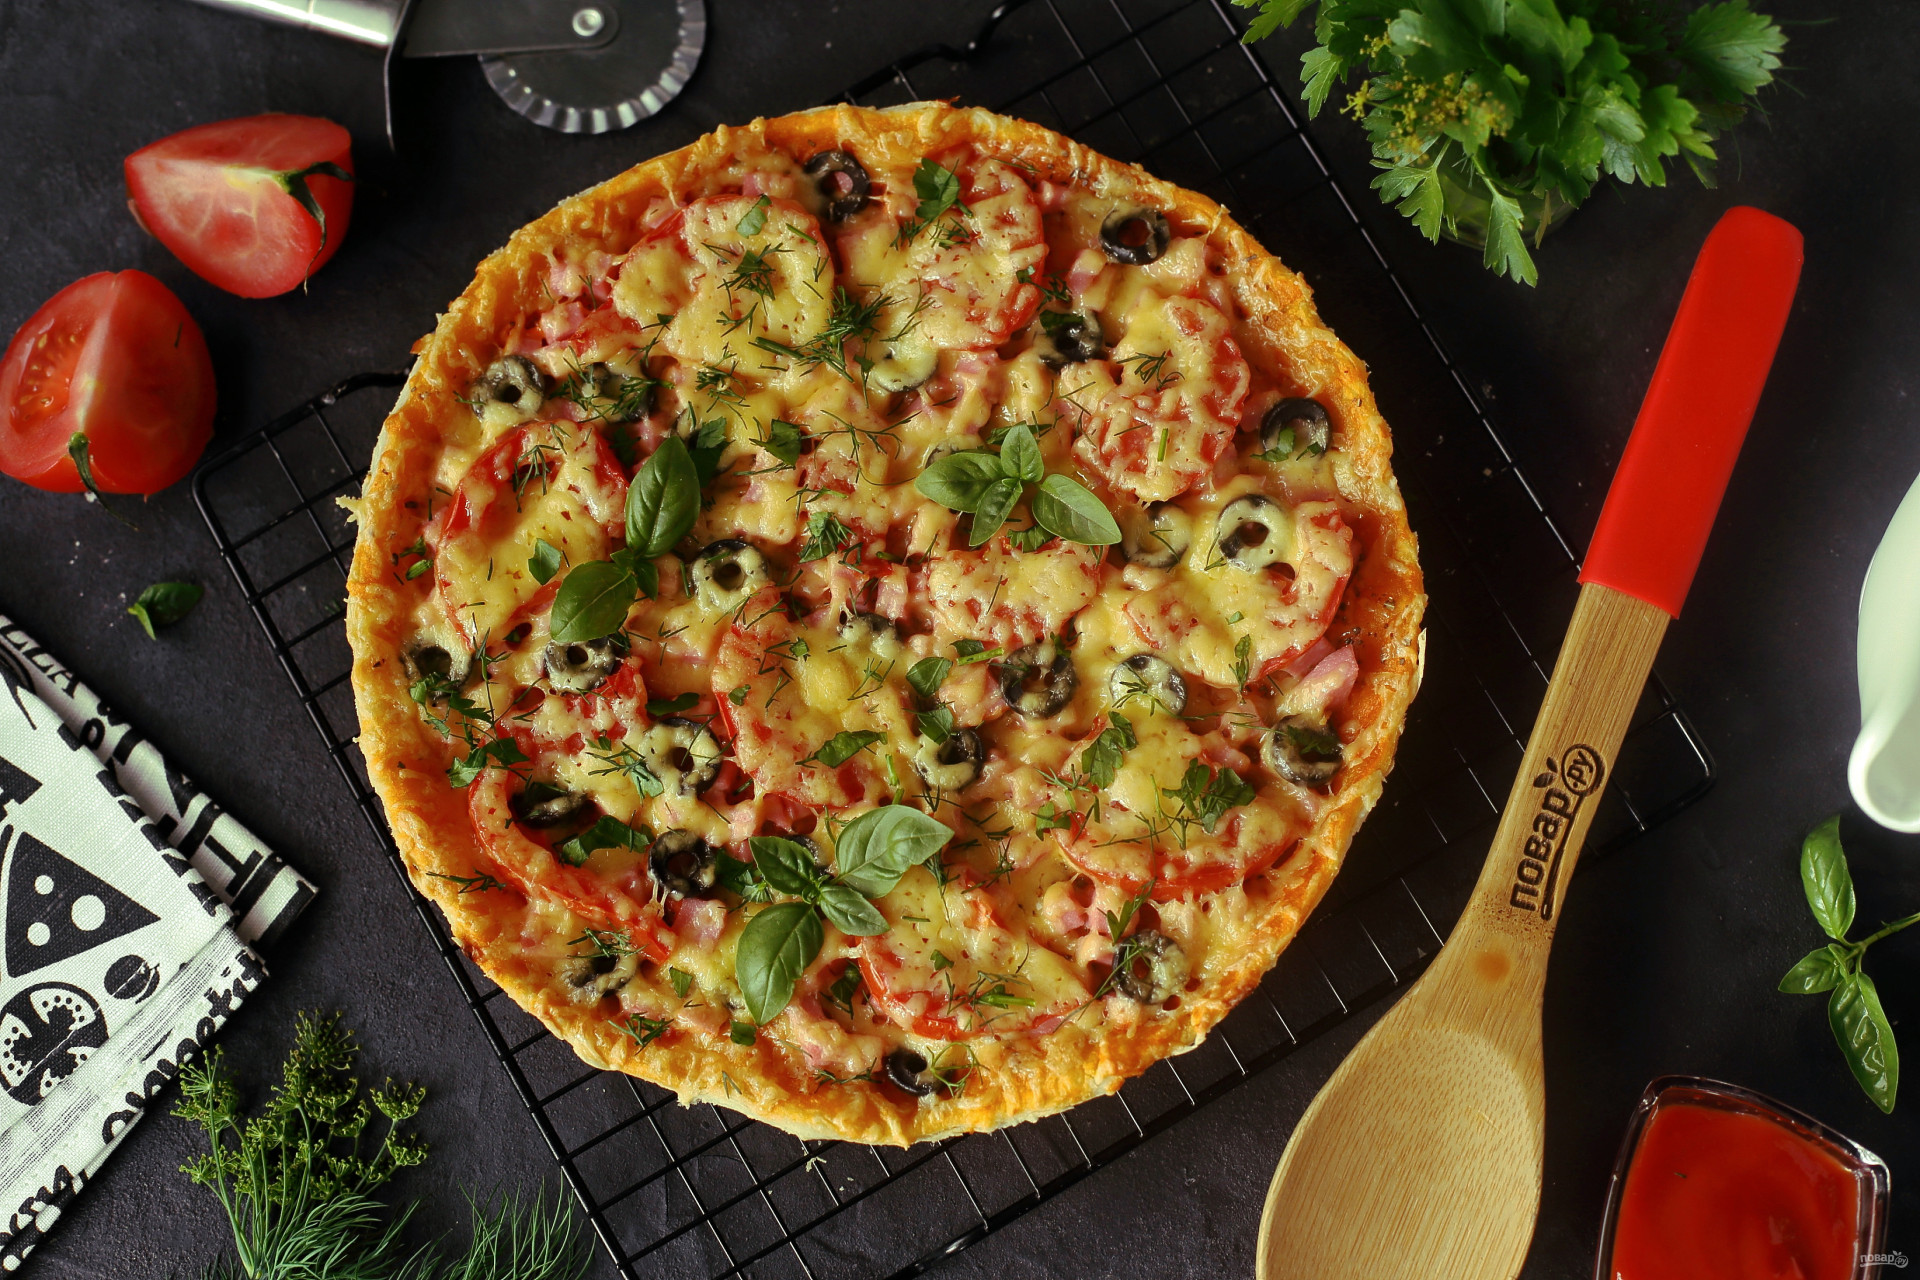 рецепт для теста домашней пиццы в духовке с колбасой и сыром фото 99